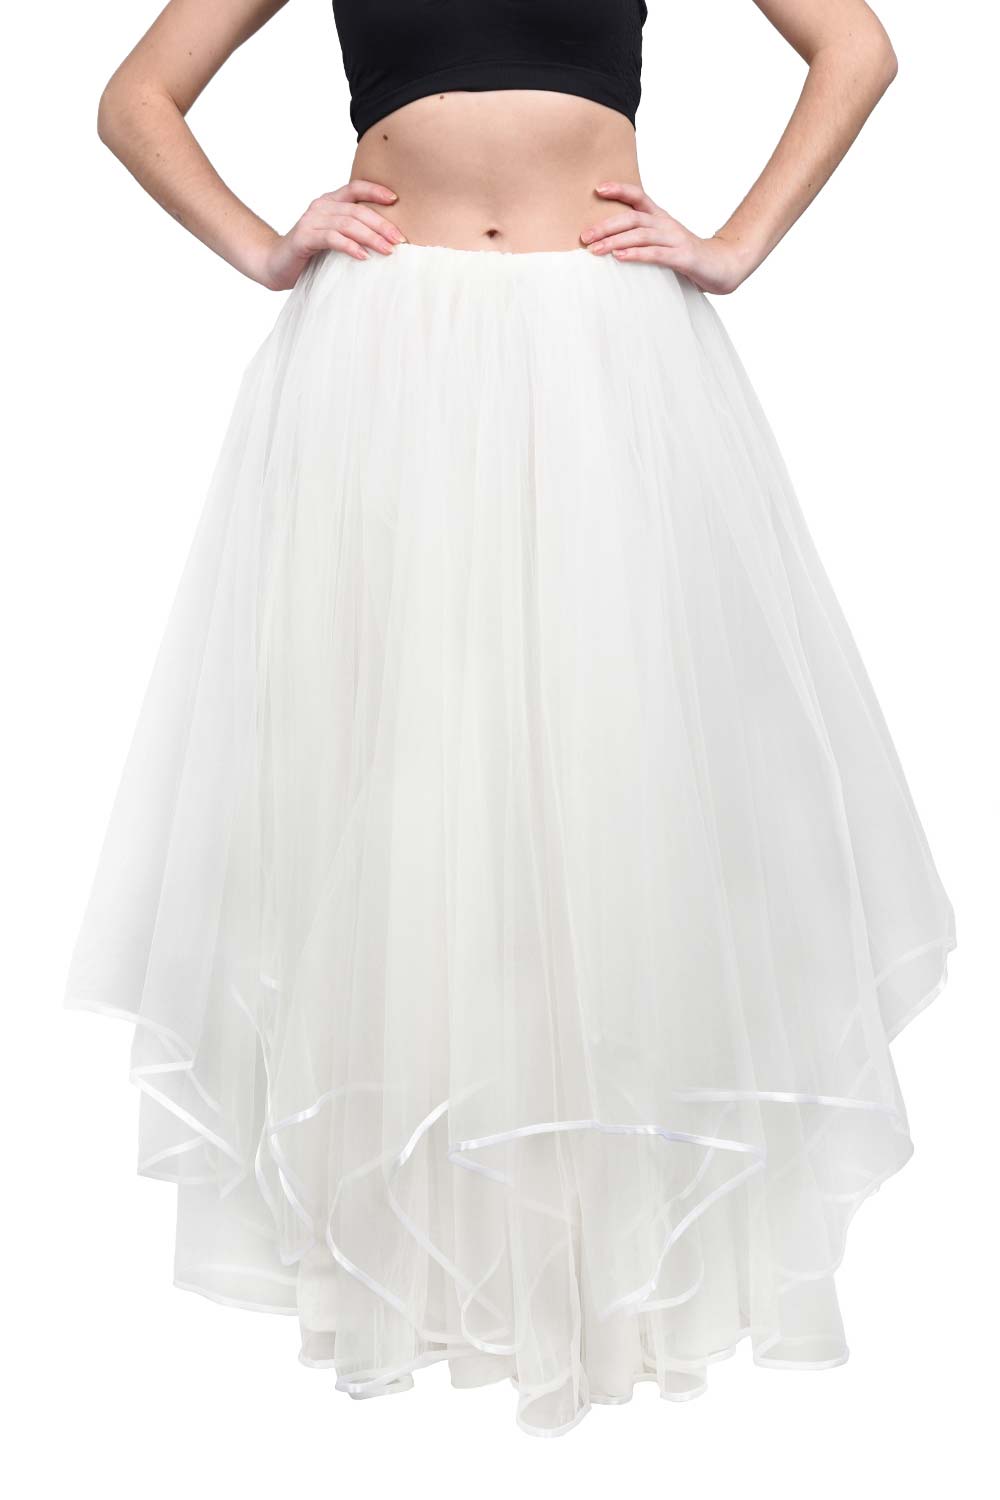 White Long Wedding Tulle Skirt Bohover 8603